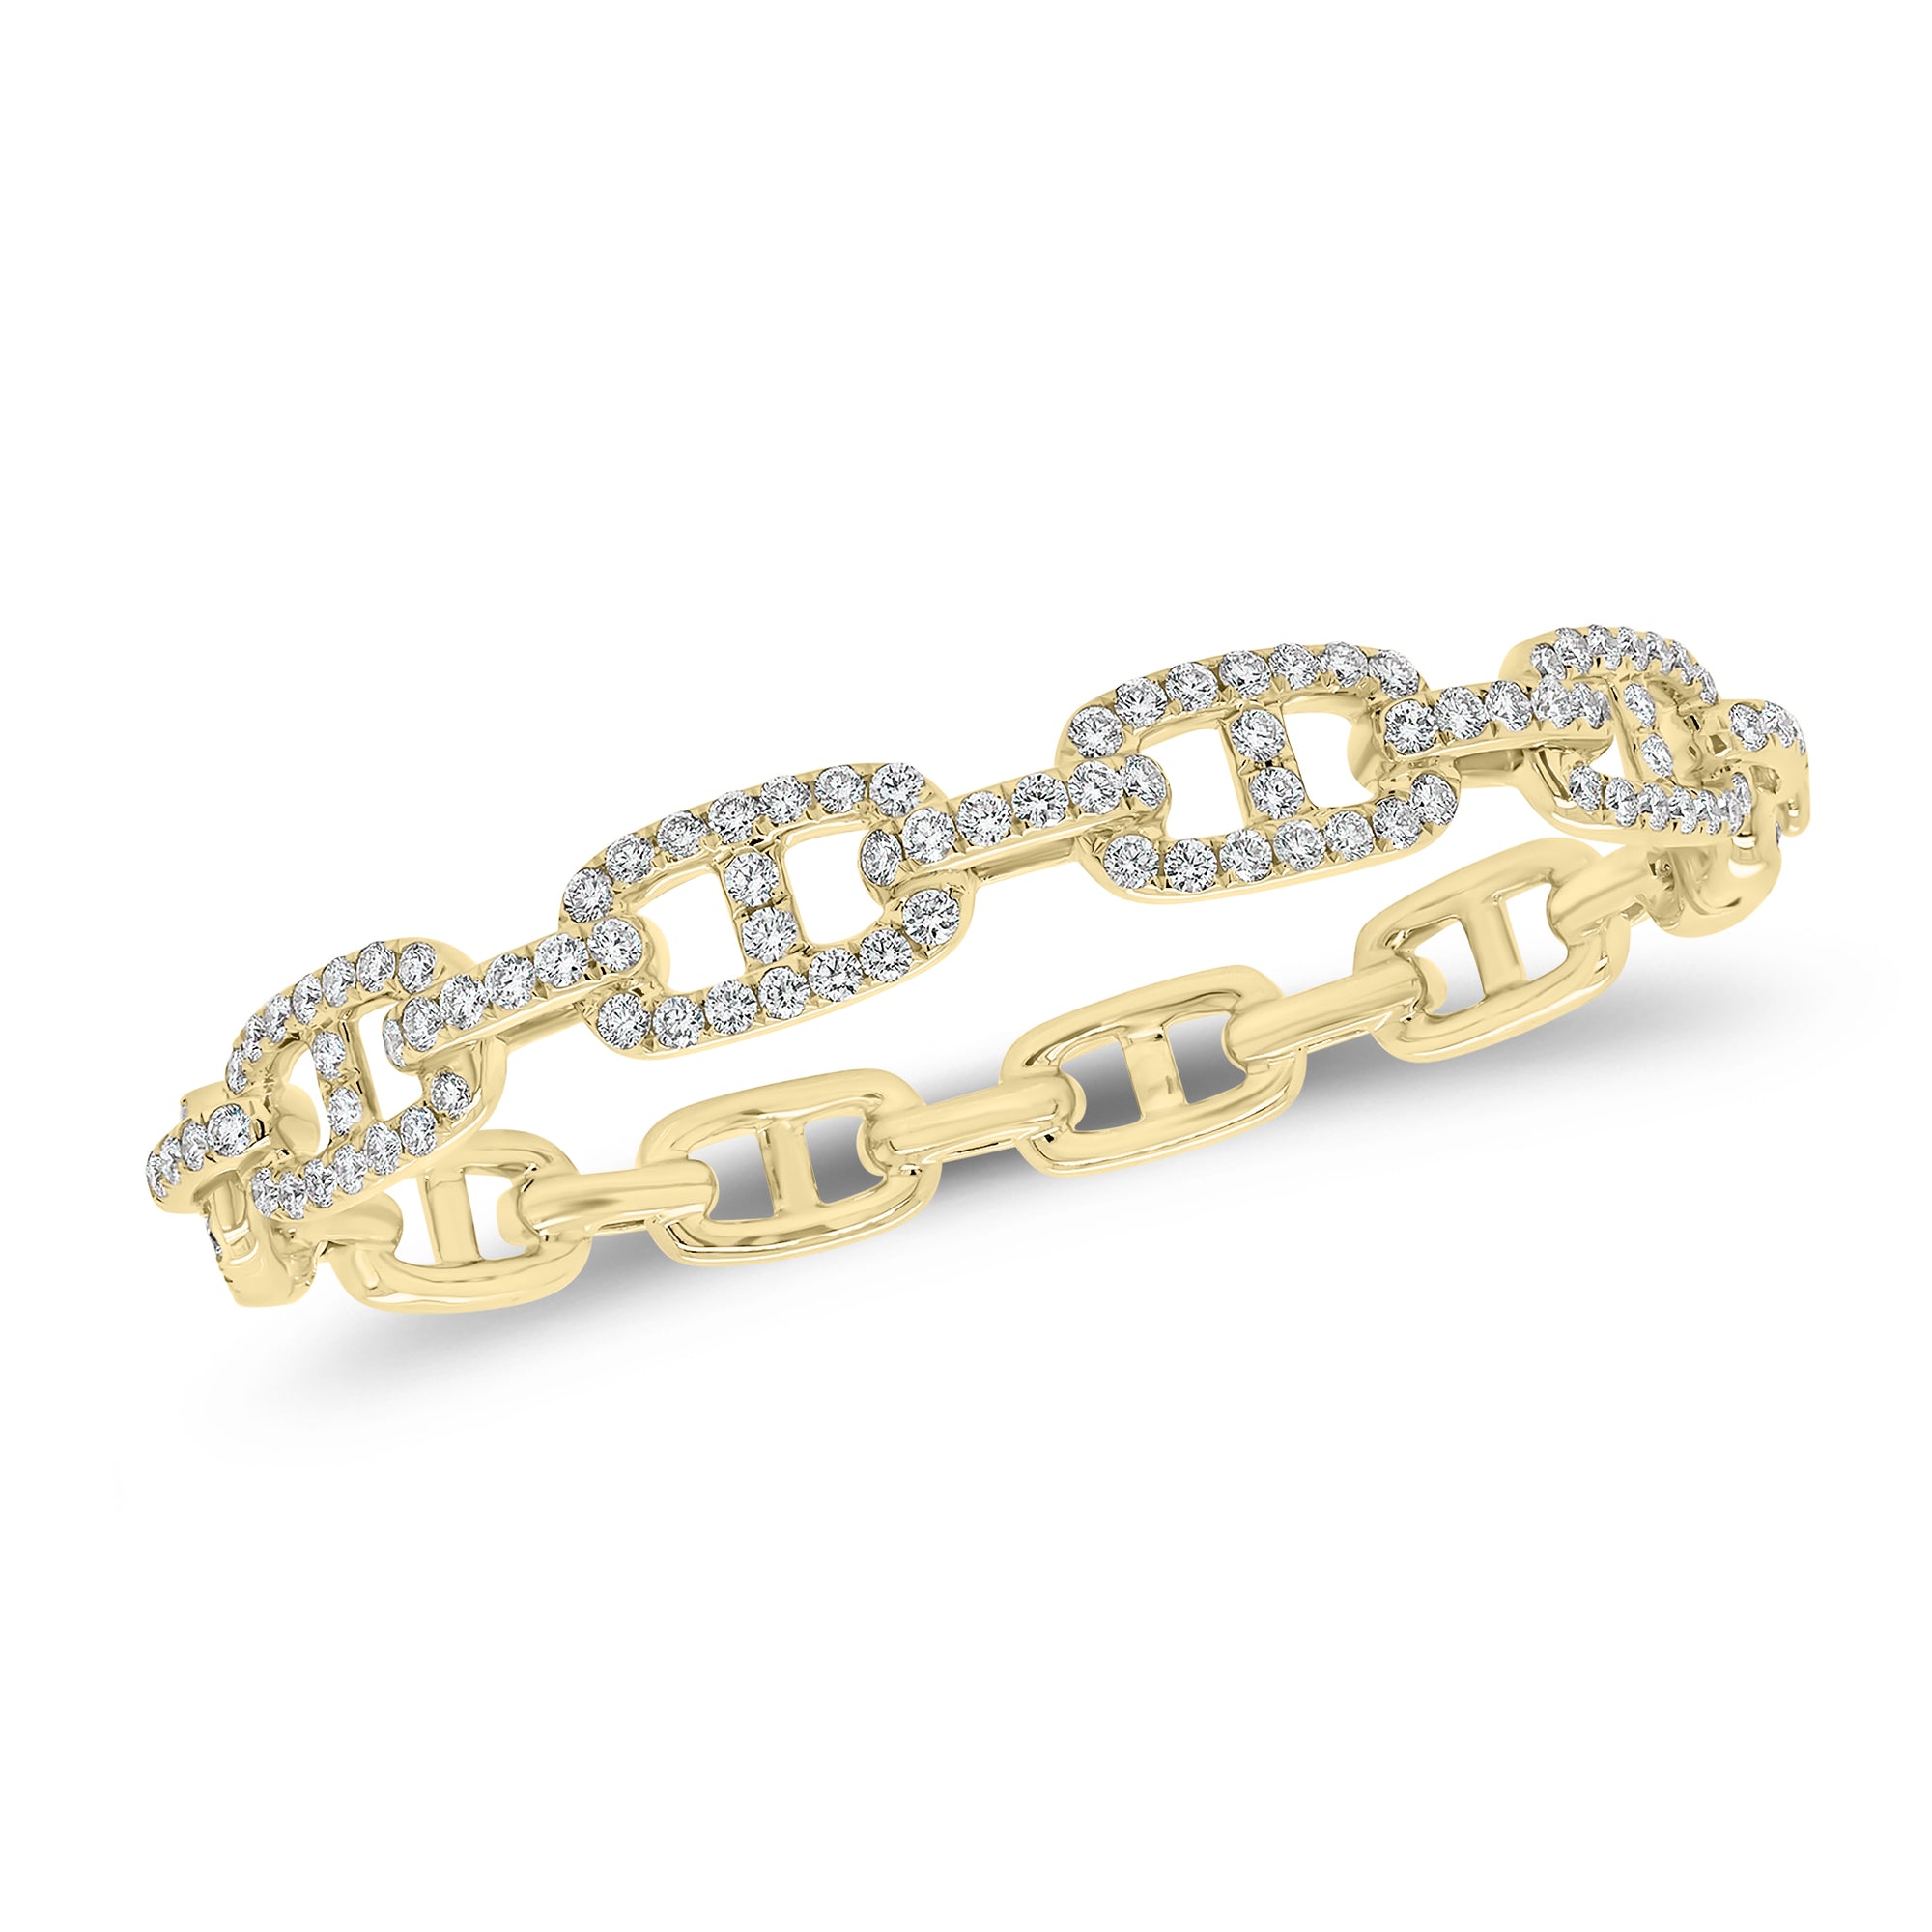 Diamond Tri-Link Bangle Bracelet - 14K gold weighing 20.31 grams  - 106 round diamonds weighing 2.48 carats